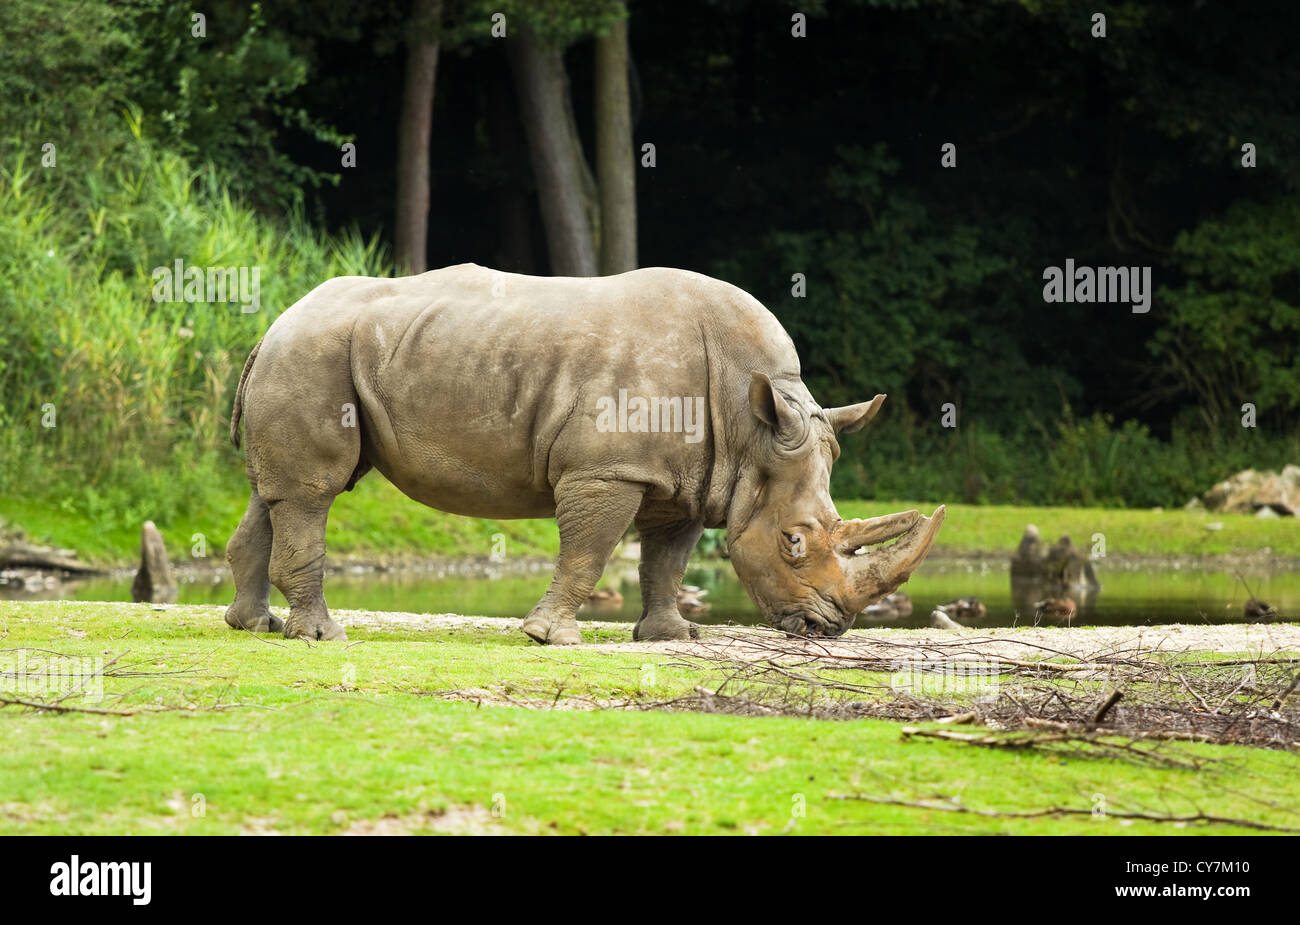 White rhinoceros or Ceratotherium simum - biggest rhinoceros - endangered species Stock Photo